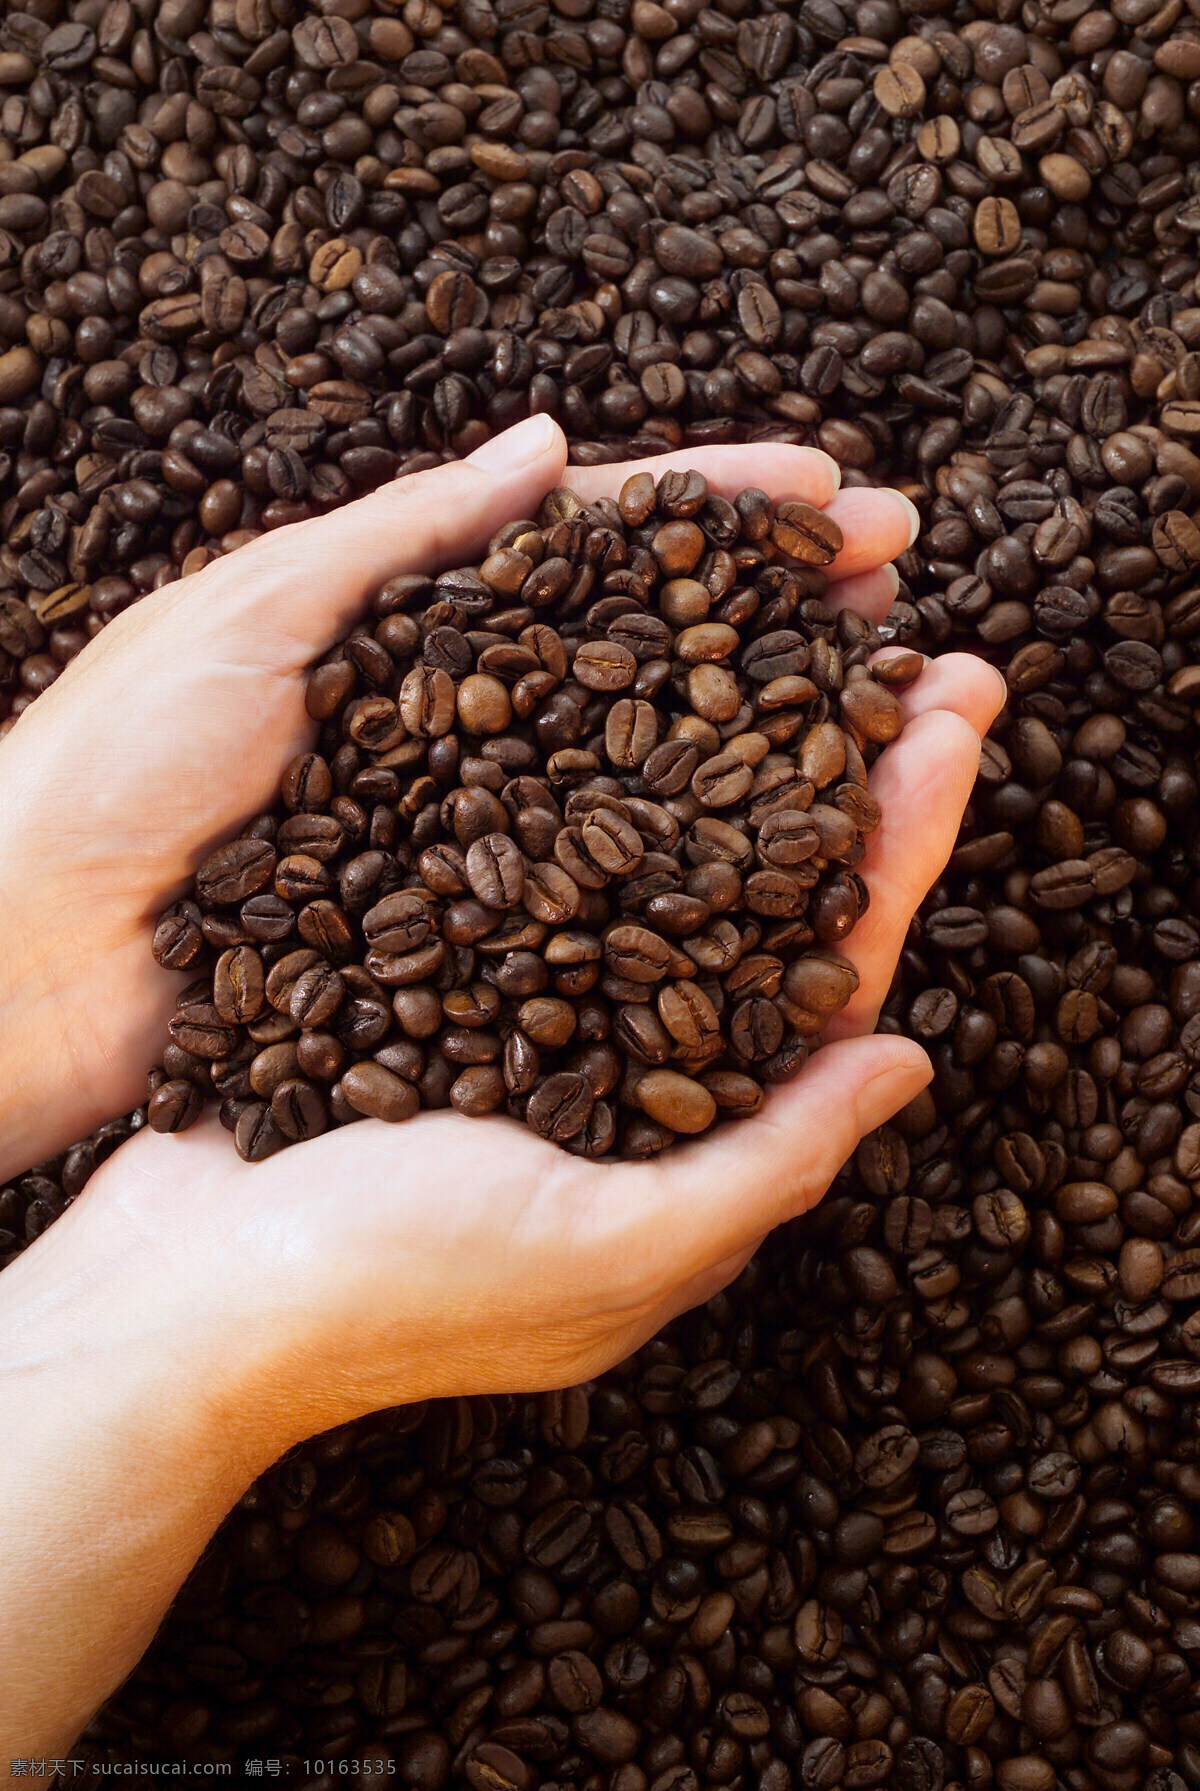 捧 咖啡豆 coffee 咖啡 一片咖啡 许多咖啡豆 颗粒 手势 手 捧着 一捧咖啡豆 特写 原材料 高清图片 咖啡图片 餐饮美食